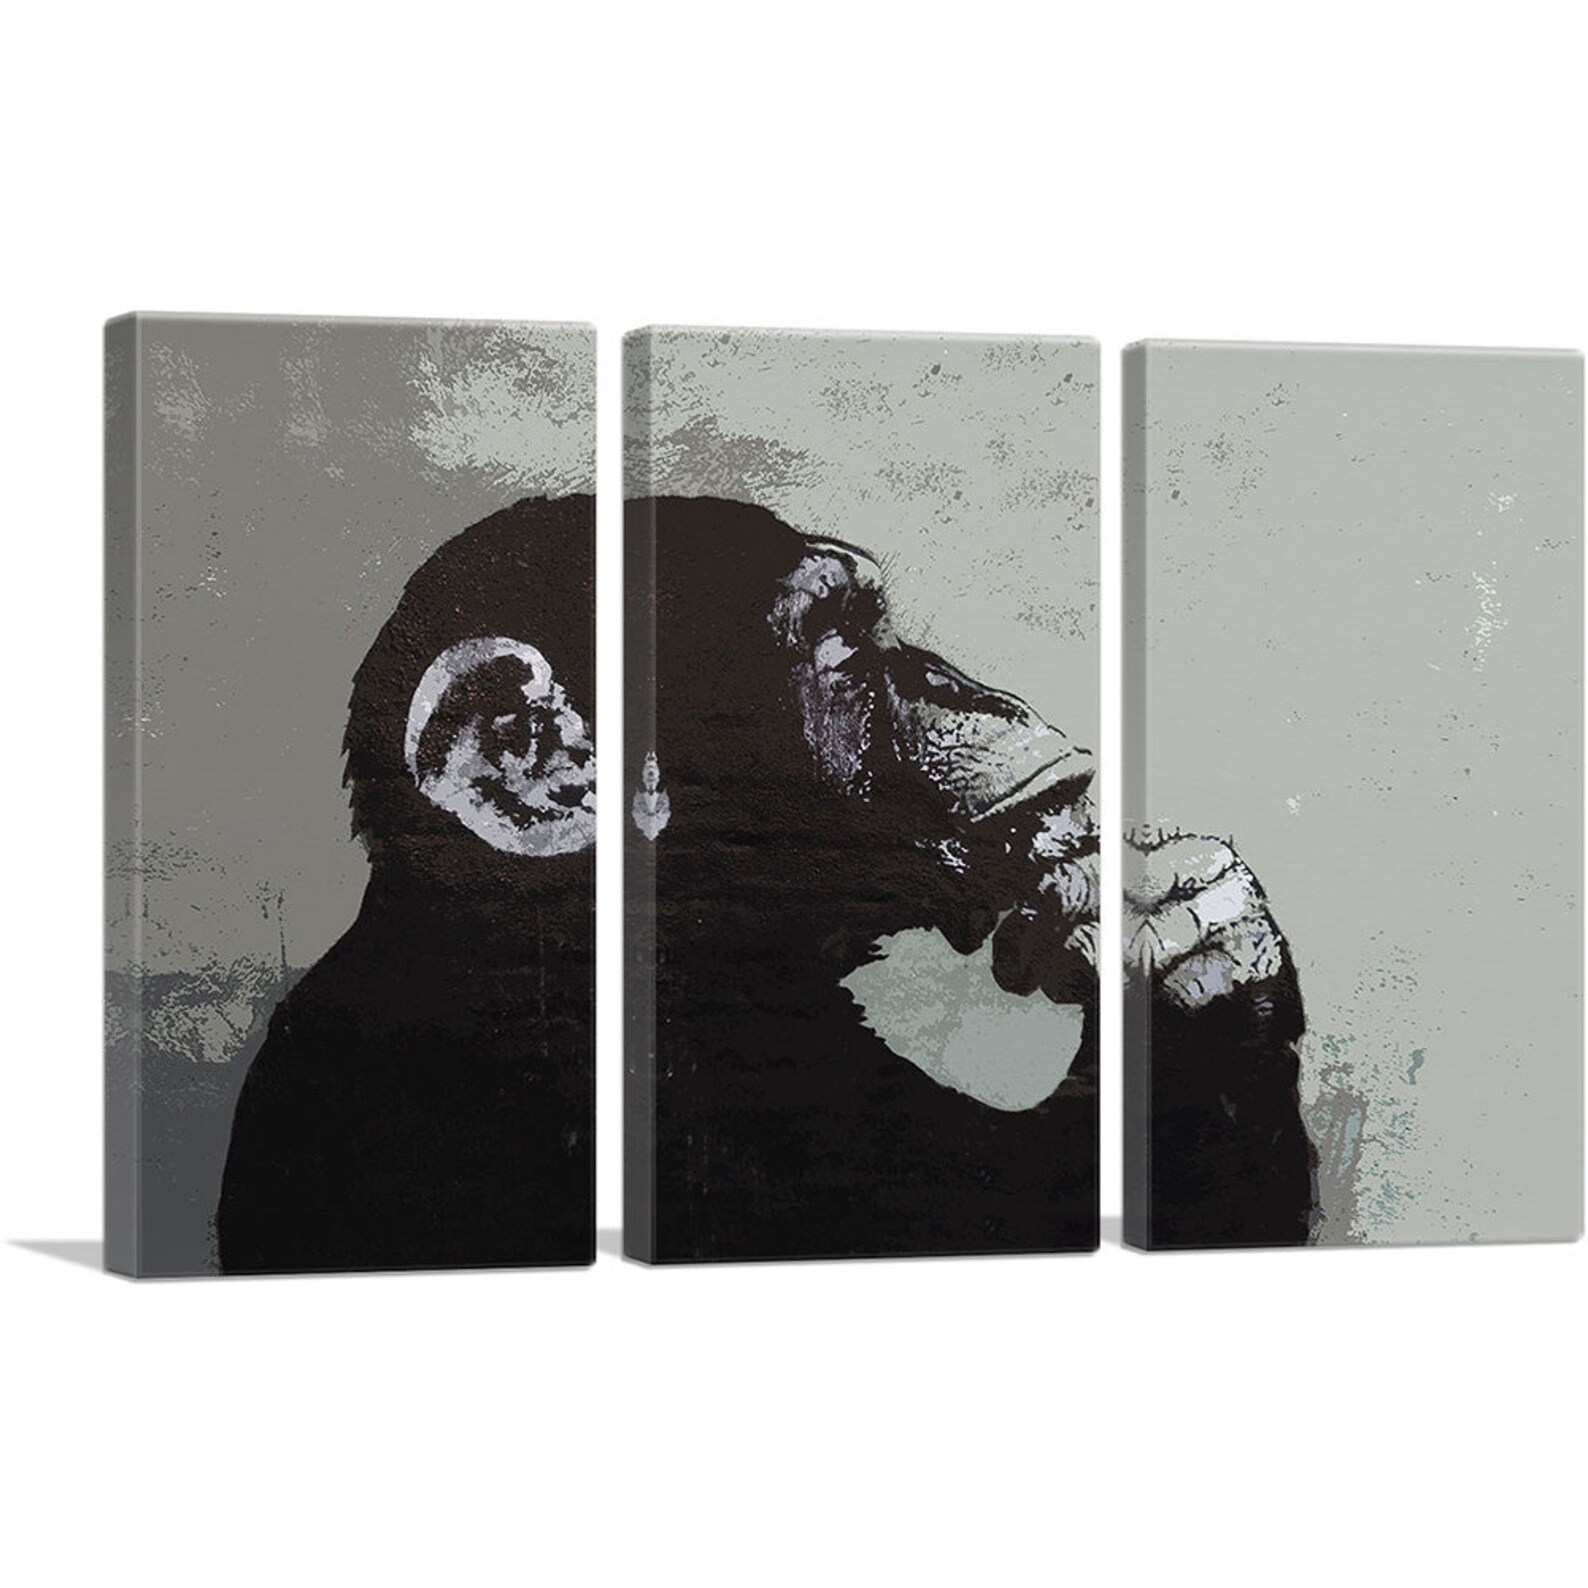 ARTCANVAS The Thinker Monkey Canvas Art Print by Banksy Canvas | Etsy